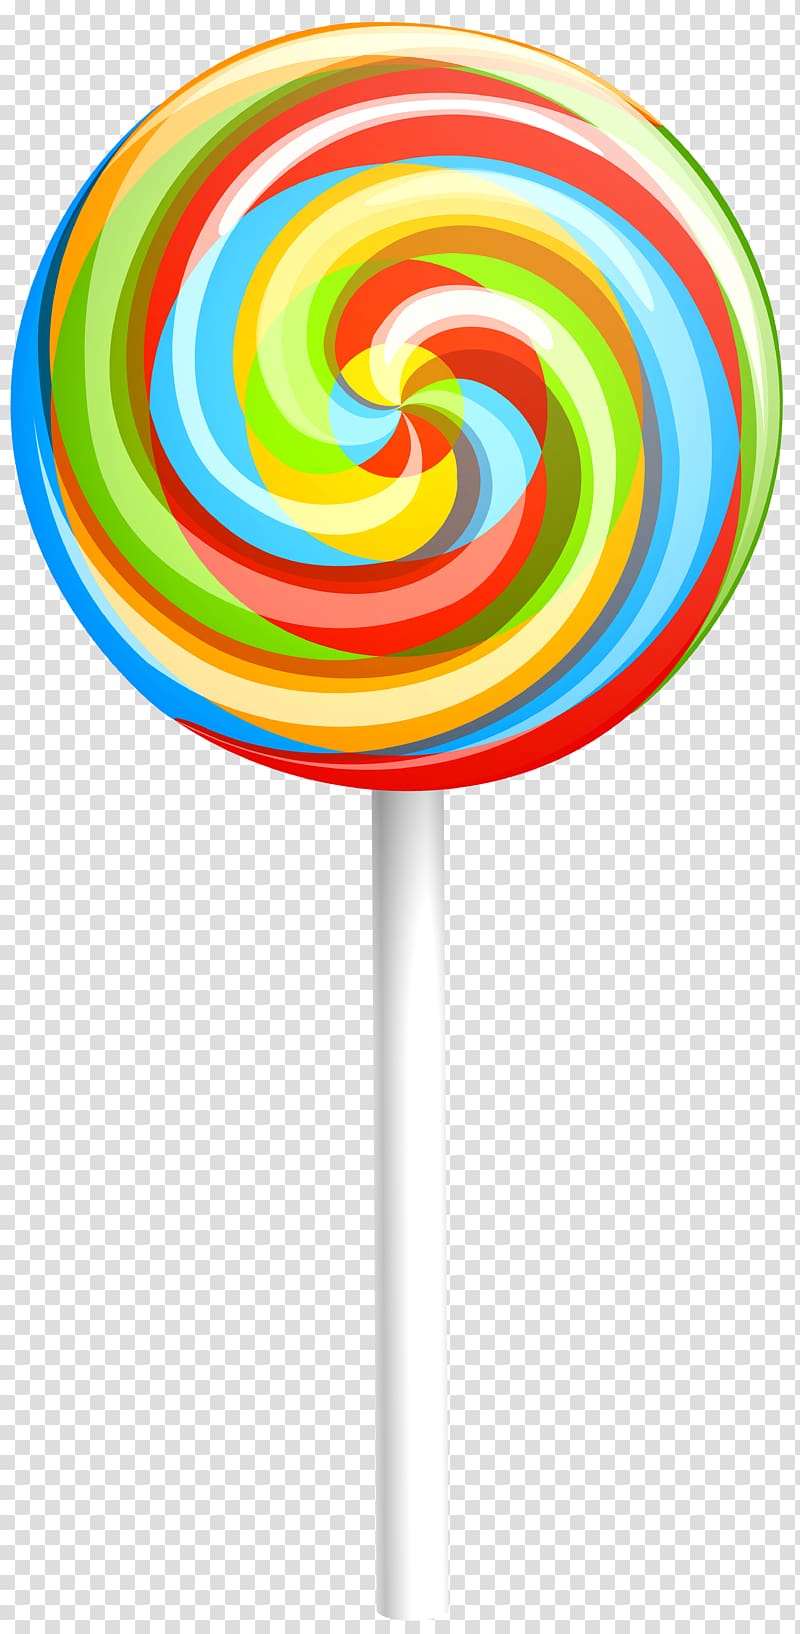 Lollipop Open Portable Network Graphics, lollipop transparent background PNG clipart